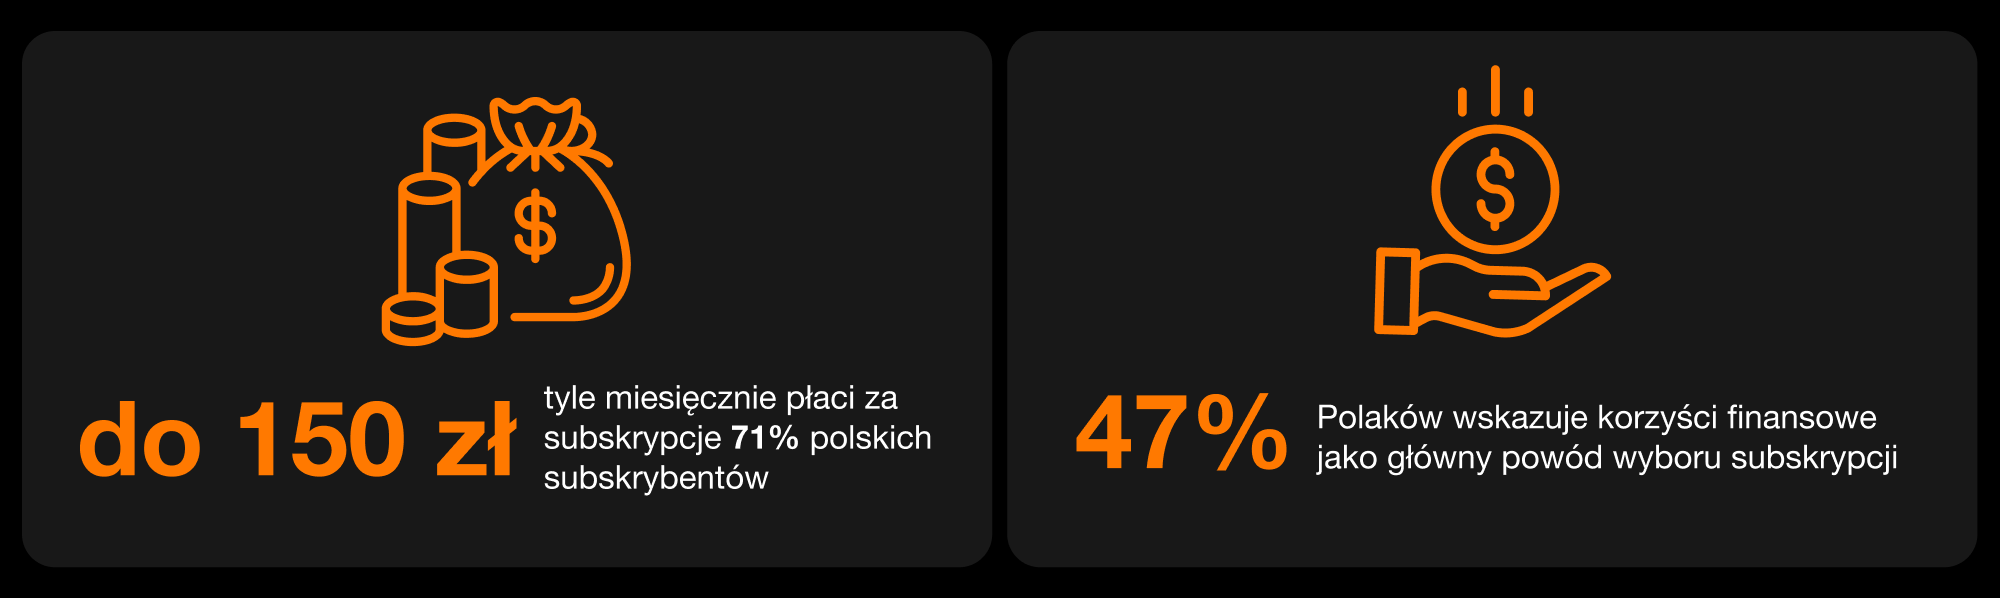 Ile Polacy wydają na subskrypcję i dlaczego wybierają ten model – infografika